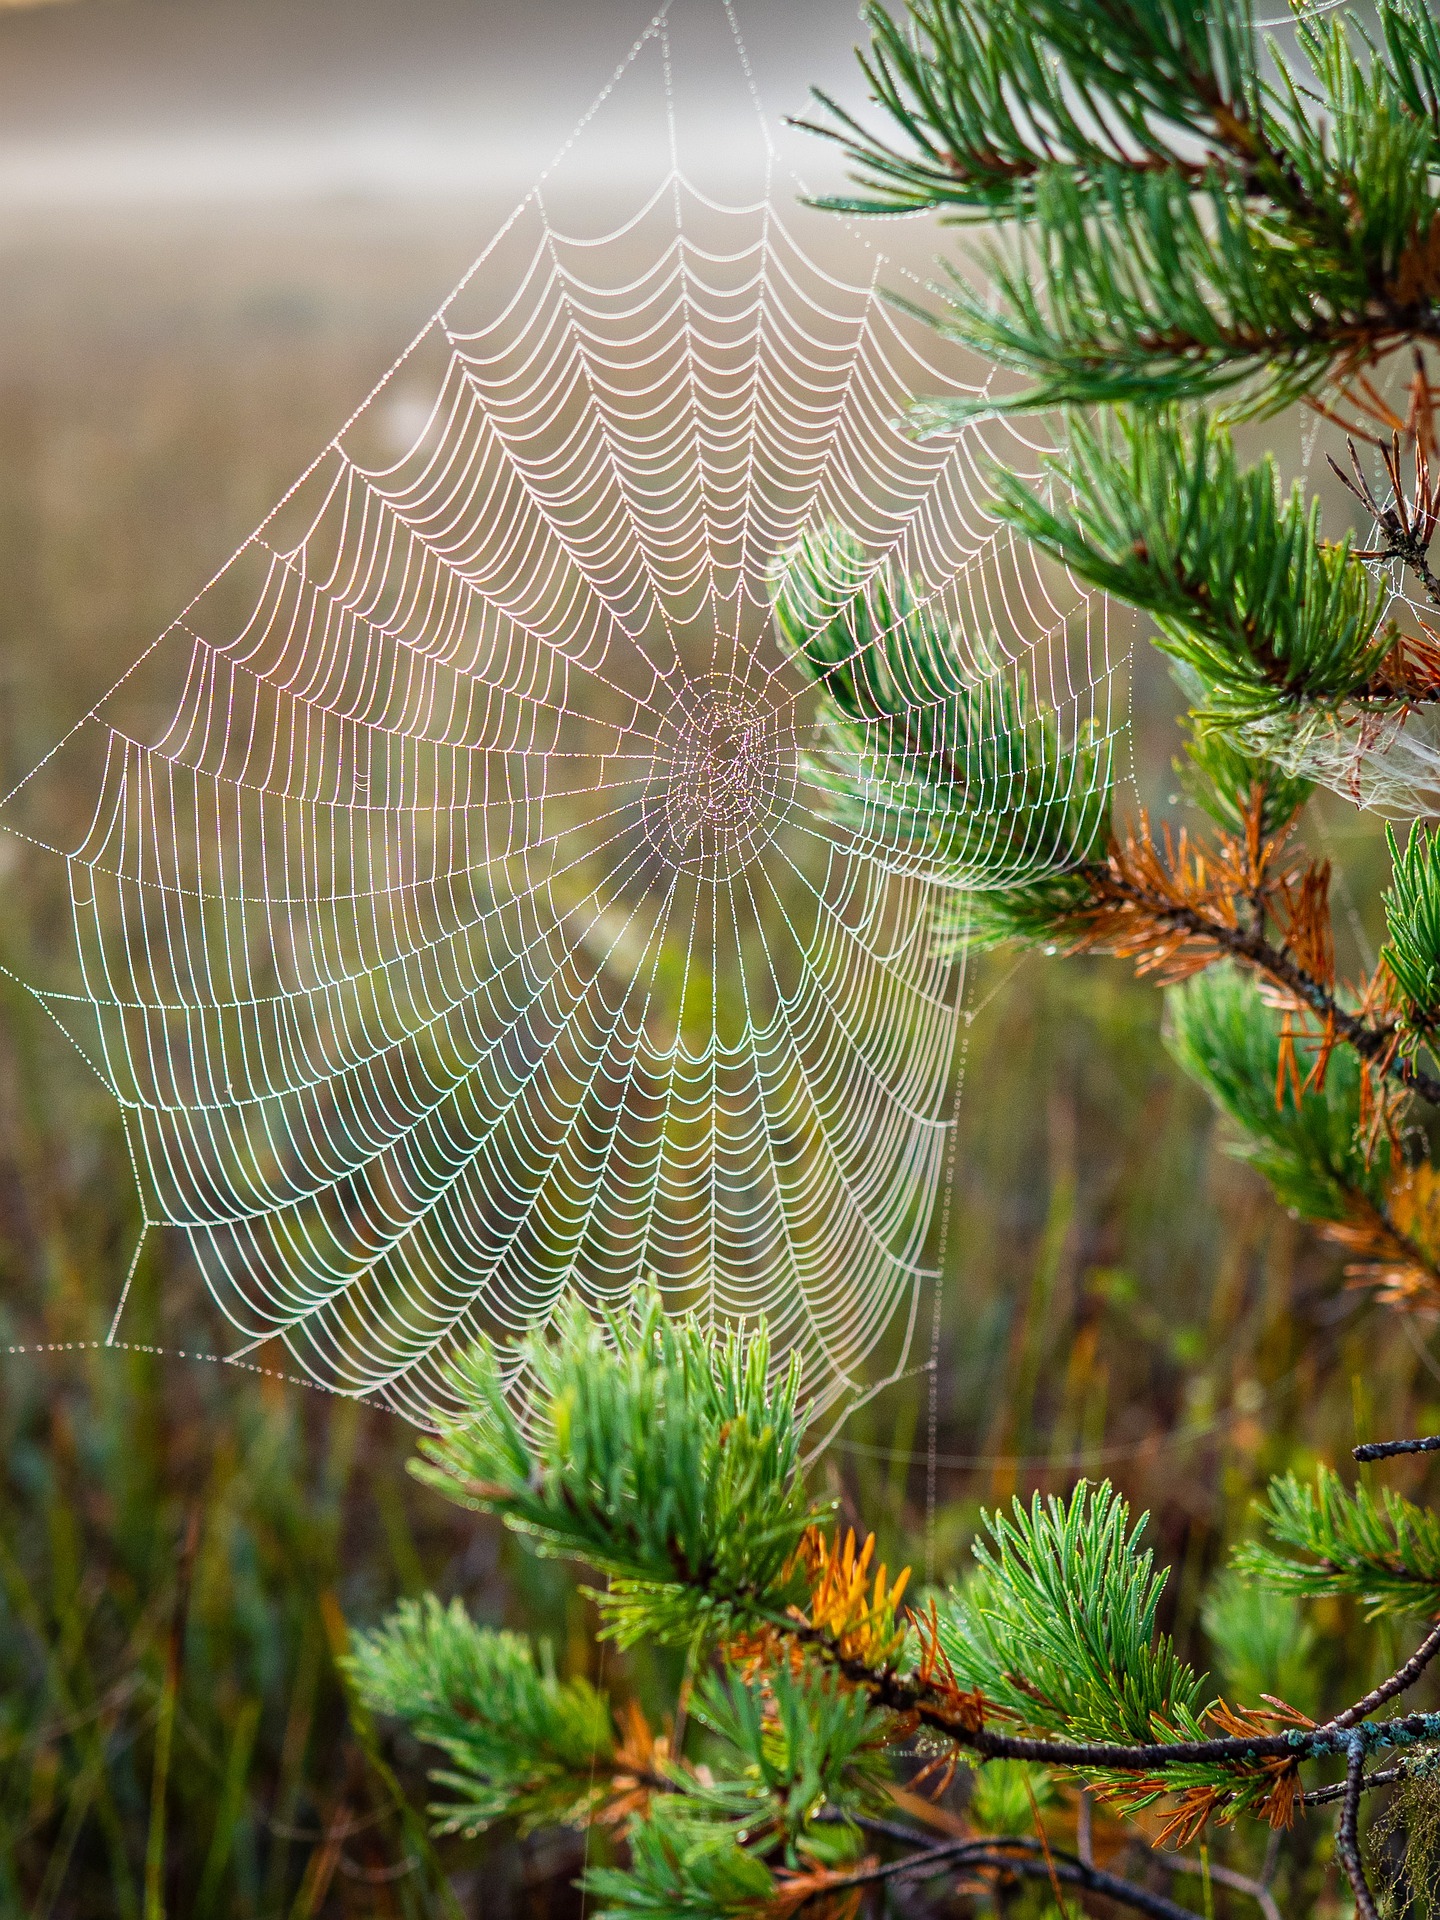 Spinnennetz | Spinnen im Herbst
					©Tjuusitalo | pixabay
				